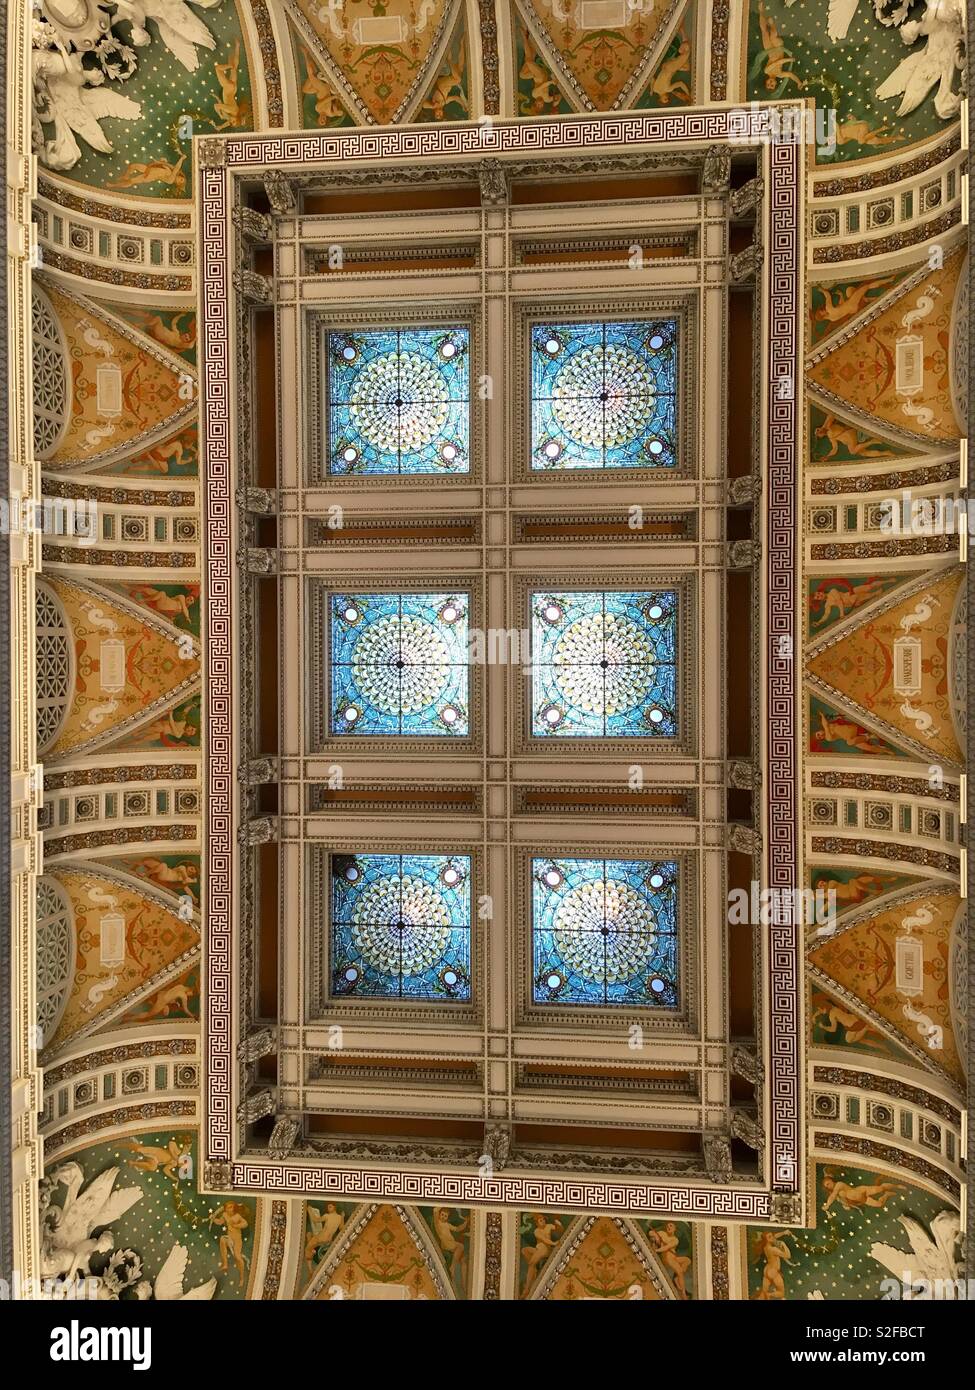 Techo de cristal, linterna de diseño renacentista italiano, Biblioteca del Congreso, ahora conocido como el edificio Thomas Jefferson; la mayor biblioteca del mundo. Uno de los EE.UU. nacional de monumentos arquitectónicos más finos Foto de stock